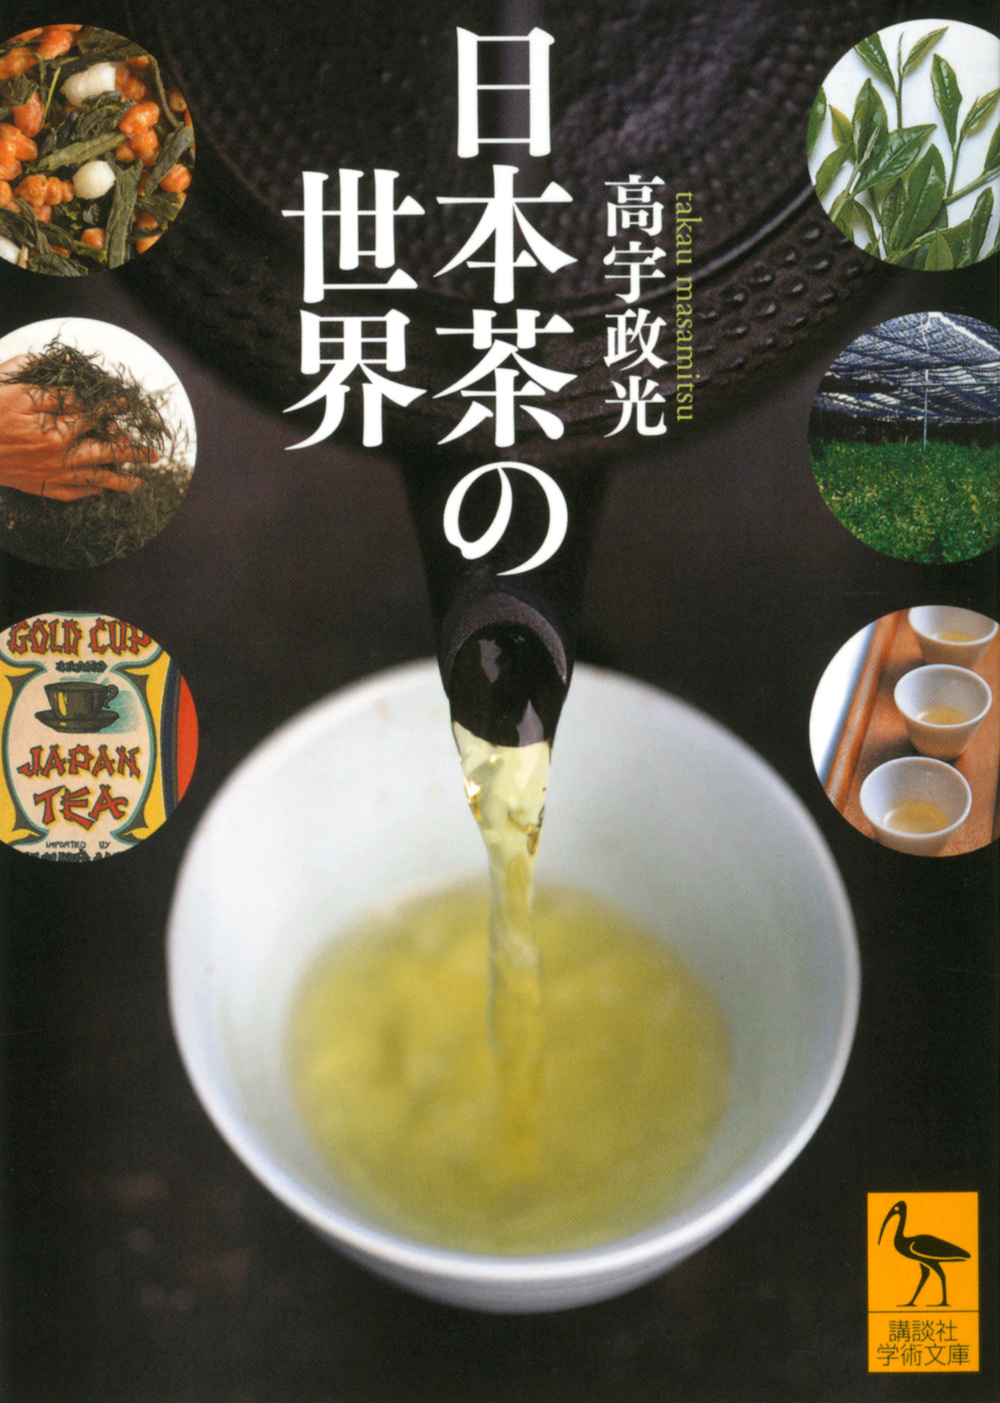 日本茶の世界の商品画像